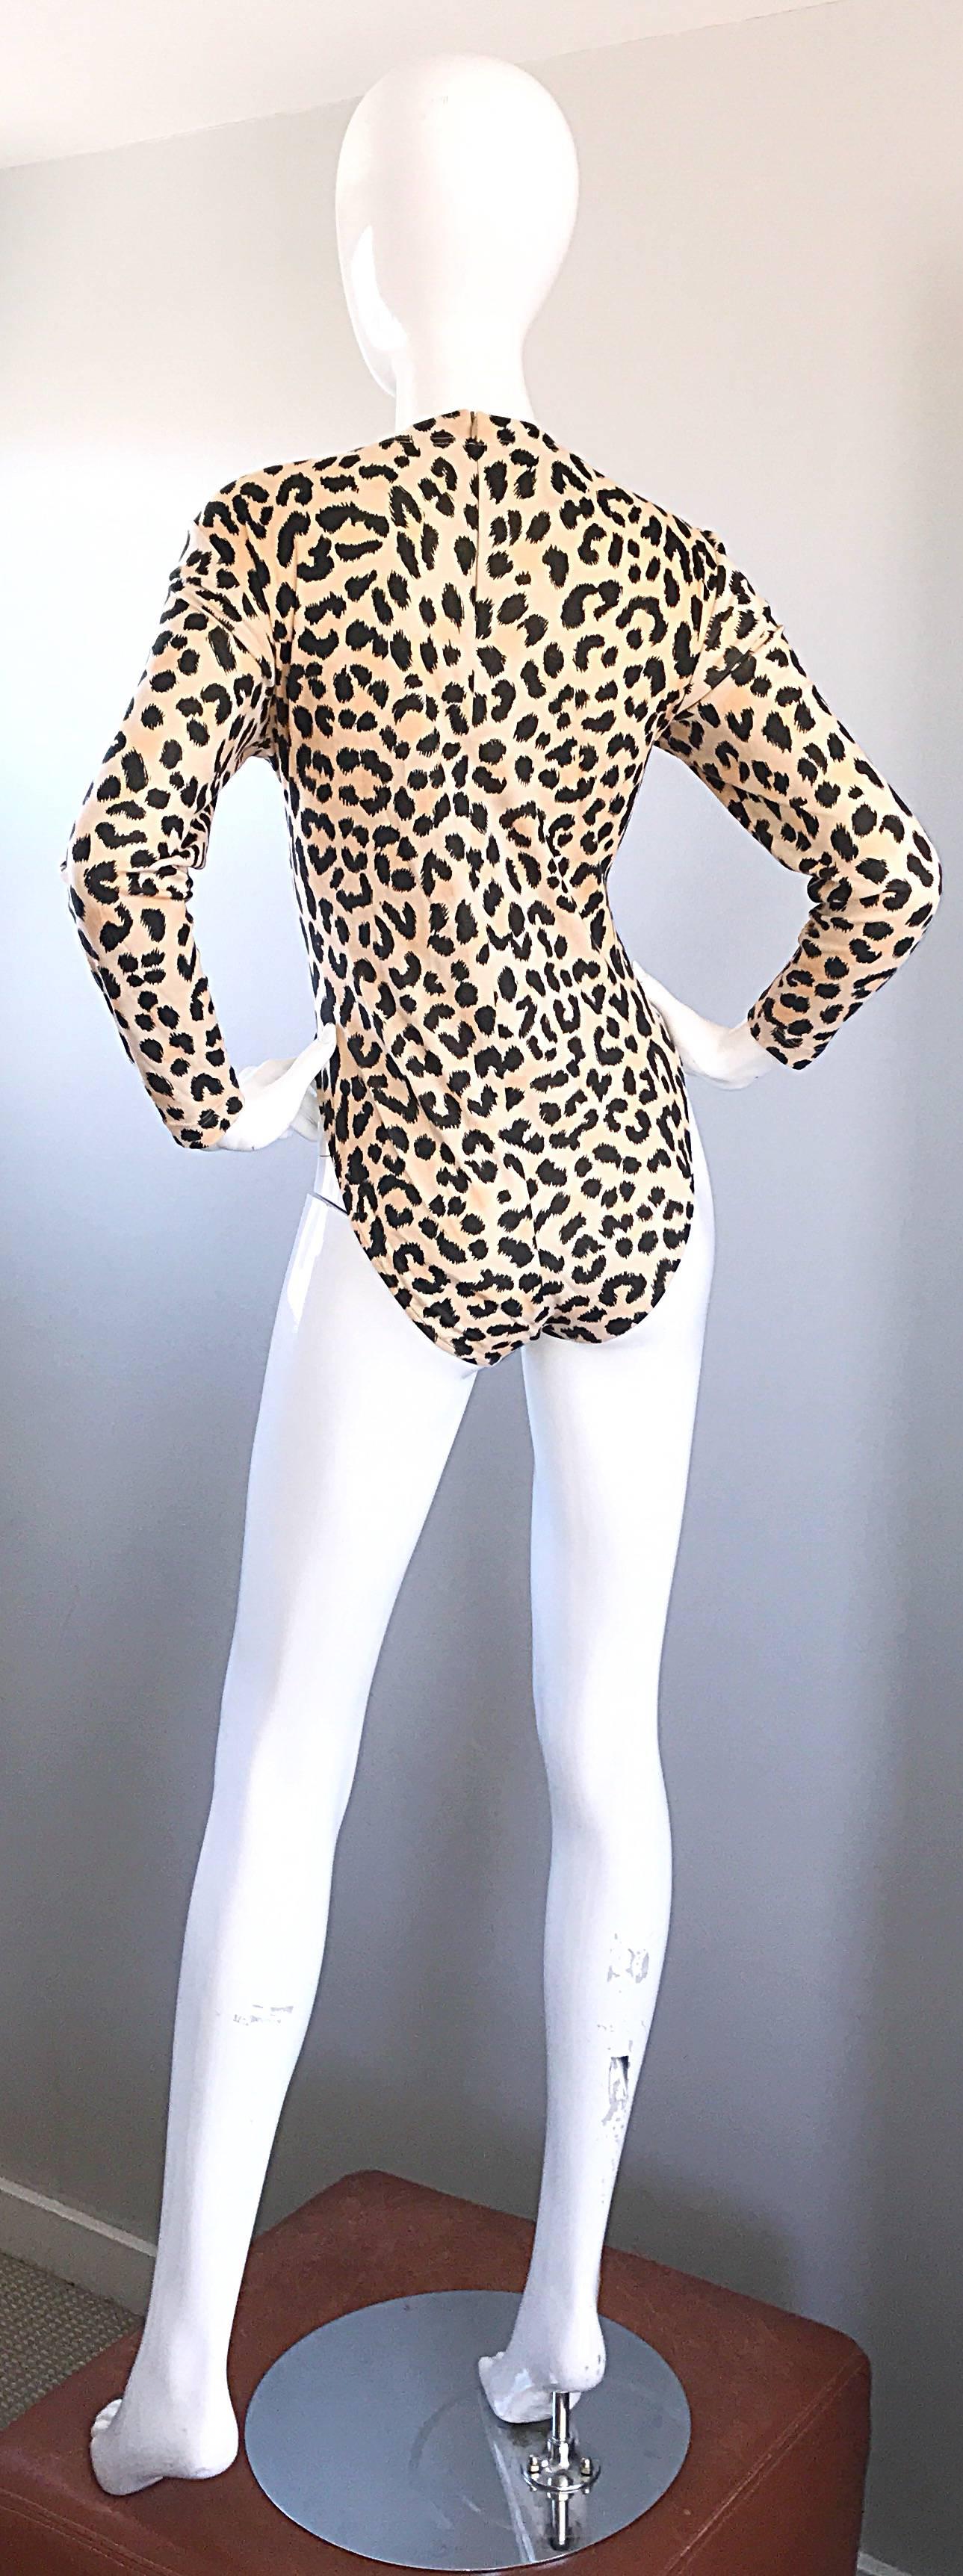 cheetah print body suit